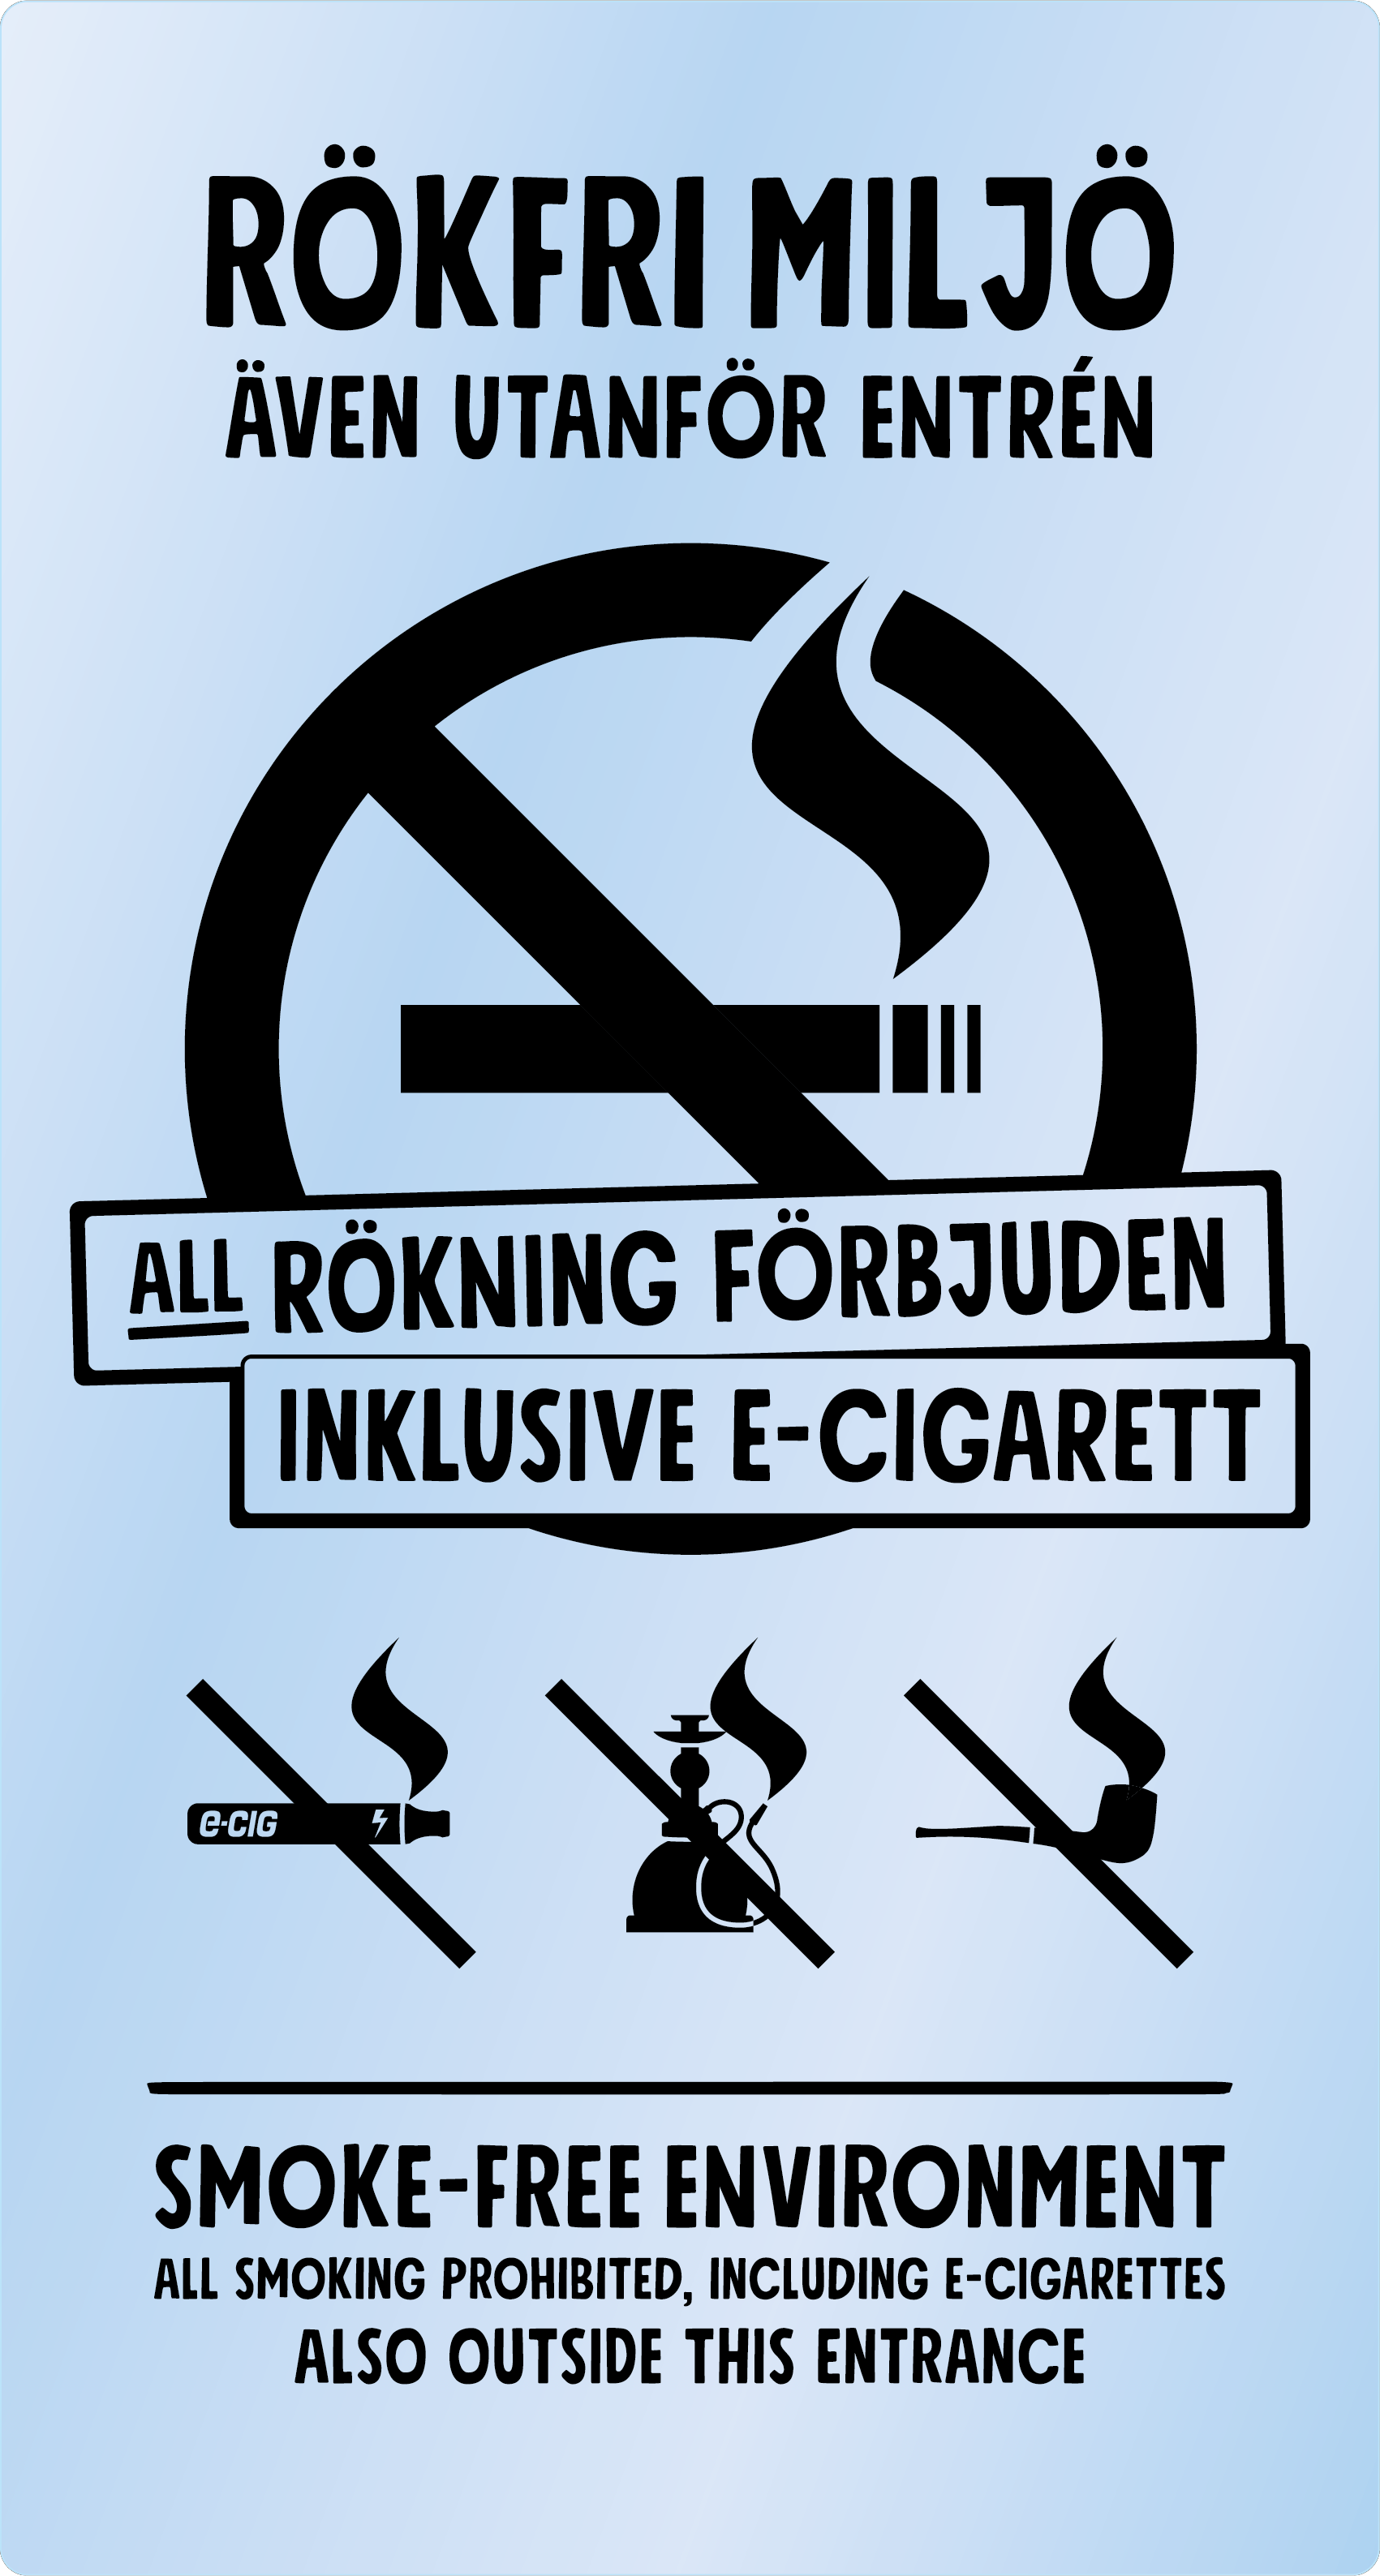 Bild rökförbudsskylt 05A10: Svart / Transparent